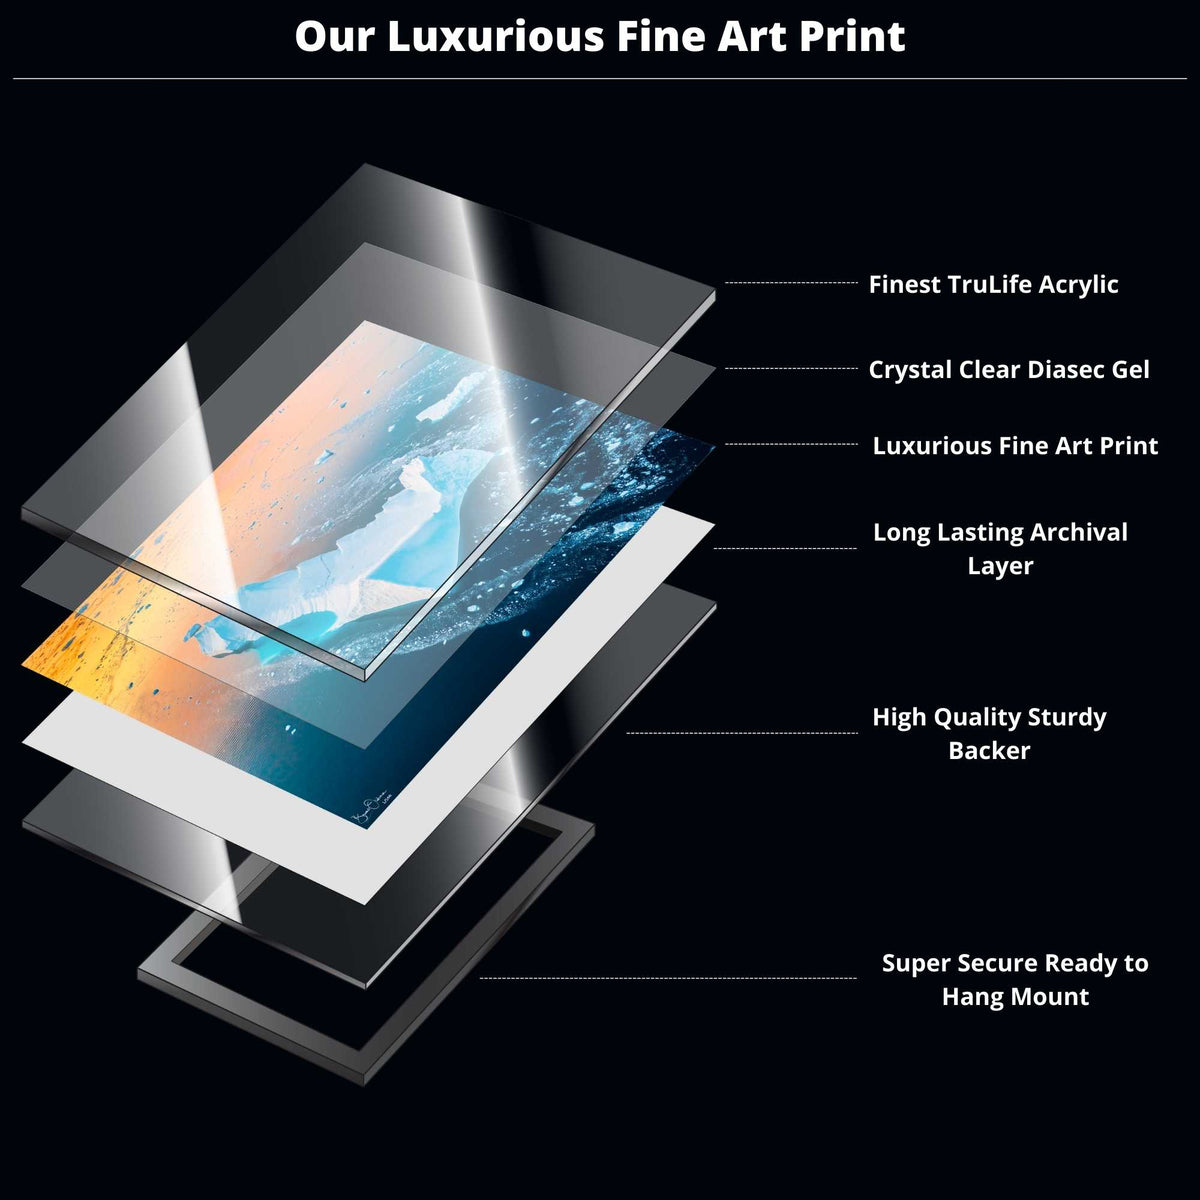 Luxurious Framed Fine Art Print High QualityLuxurious Framed Fine Art Print High Quality